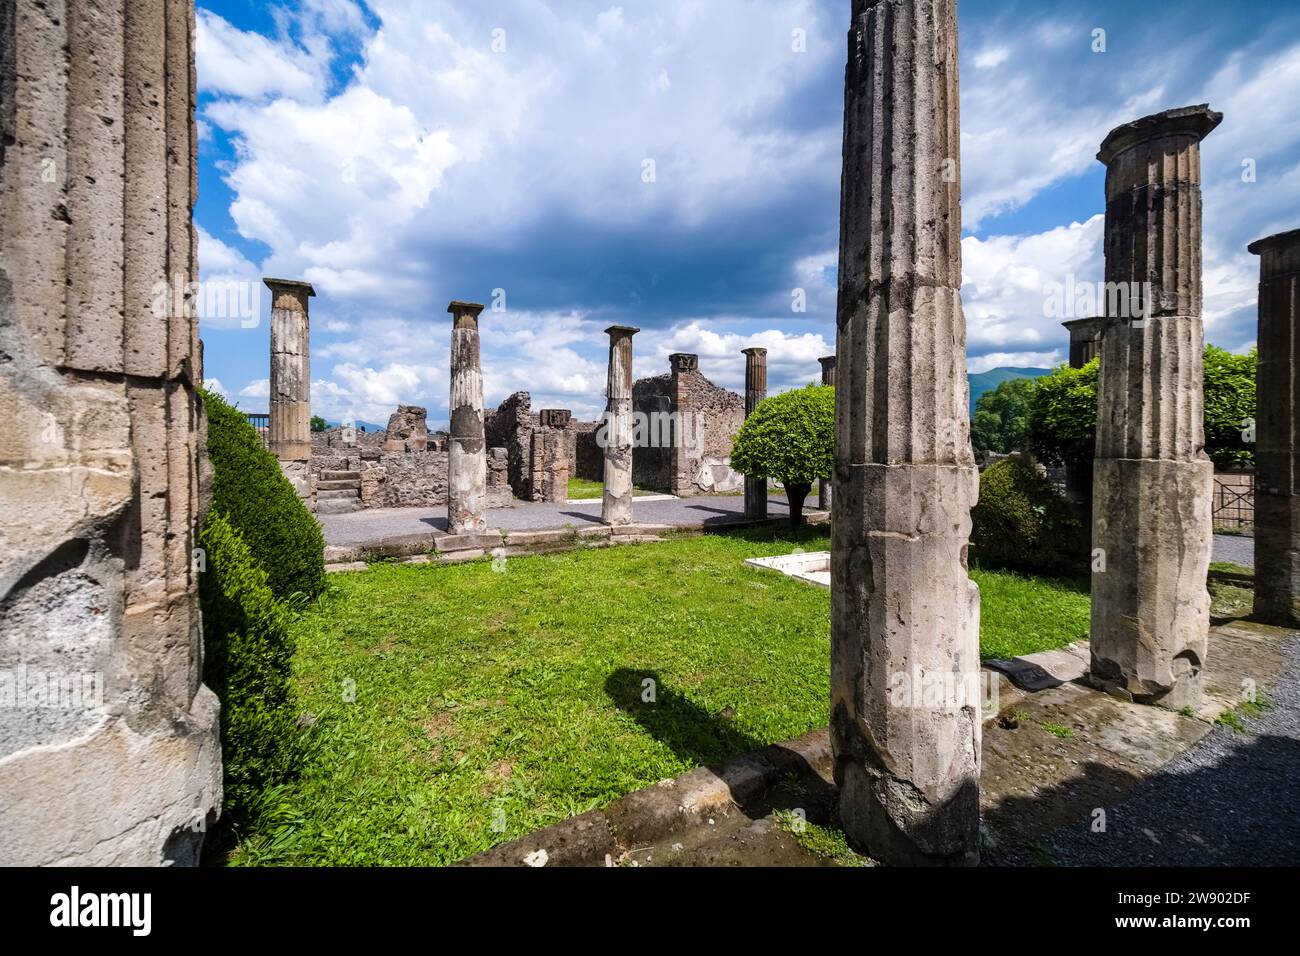 Ruinen der Casa dei Cornelii in der archäologischen Stätte von Pompeji, einer antiken Stadt, die durch den Ausbruch des Vesuv im Jahr 79 n. Chr. zerstört wurde. Stockfoto